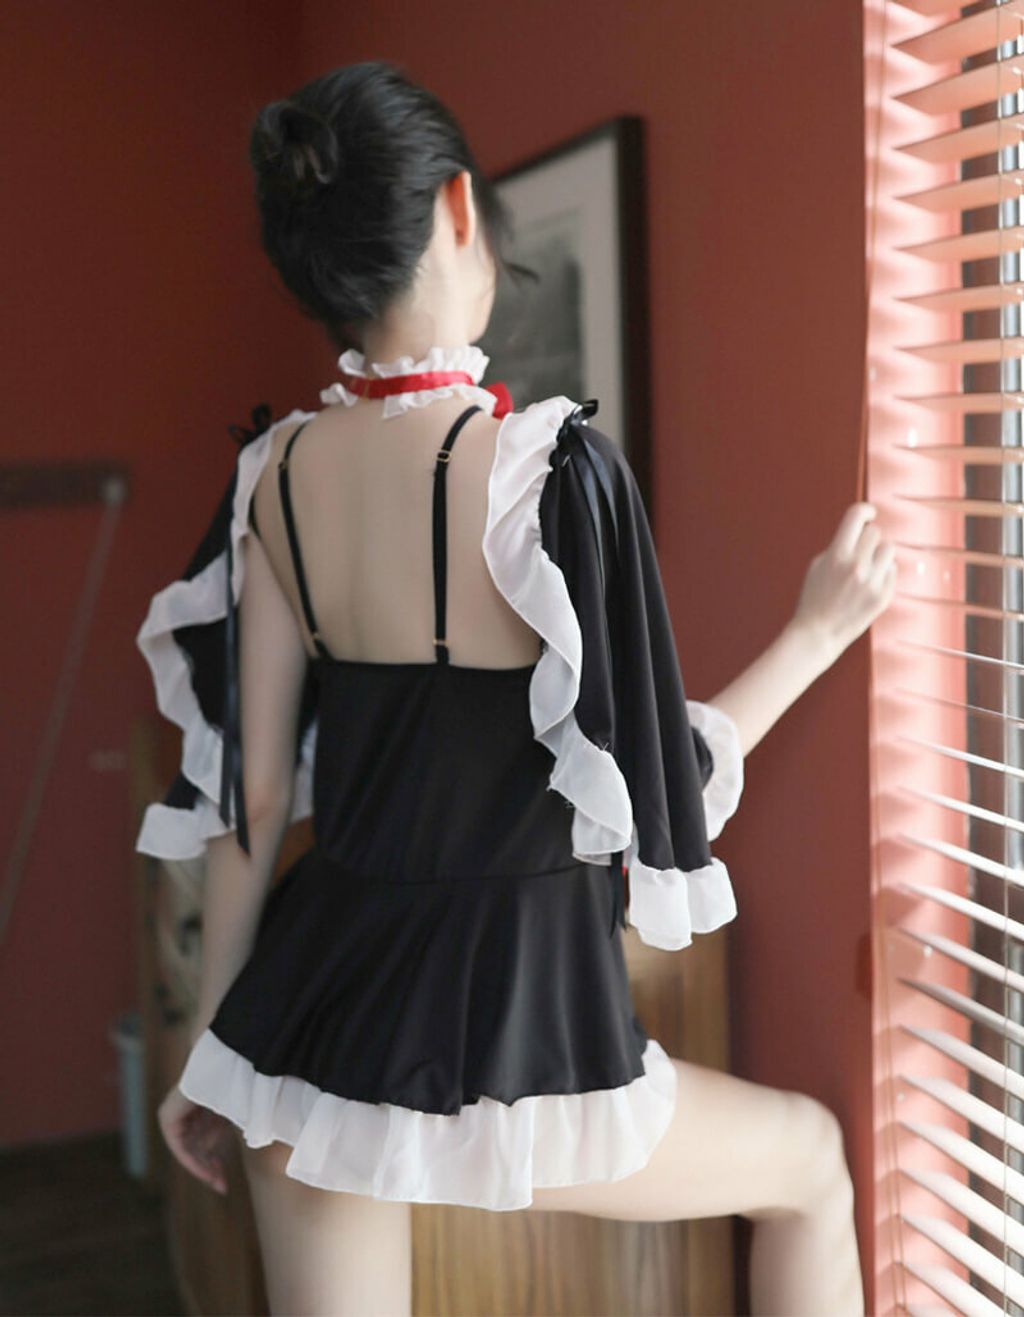 Maid Costume | Gothic Maid Lingerie